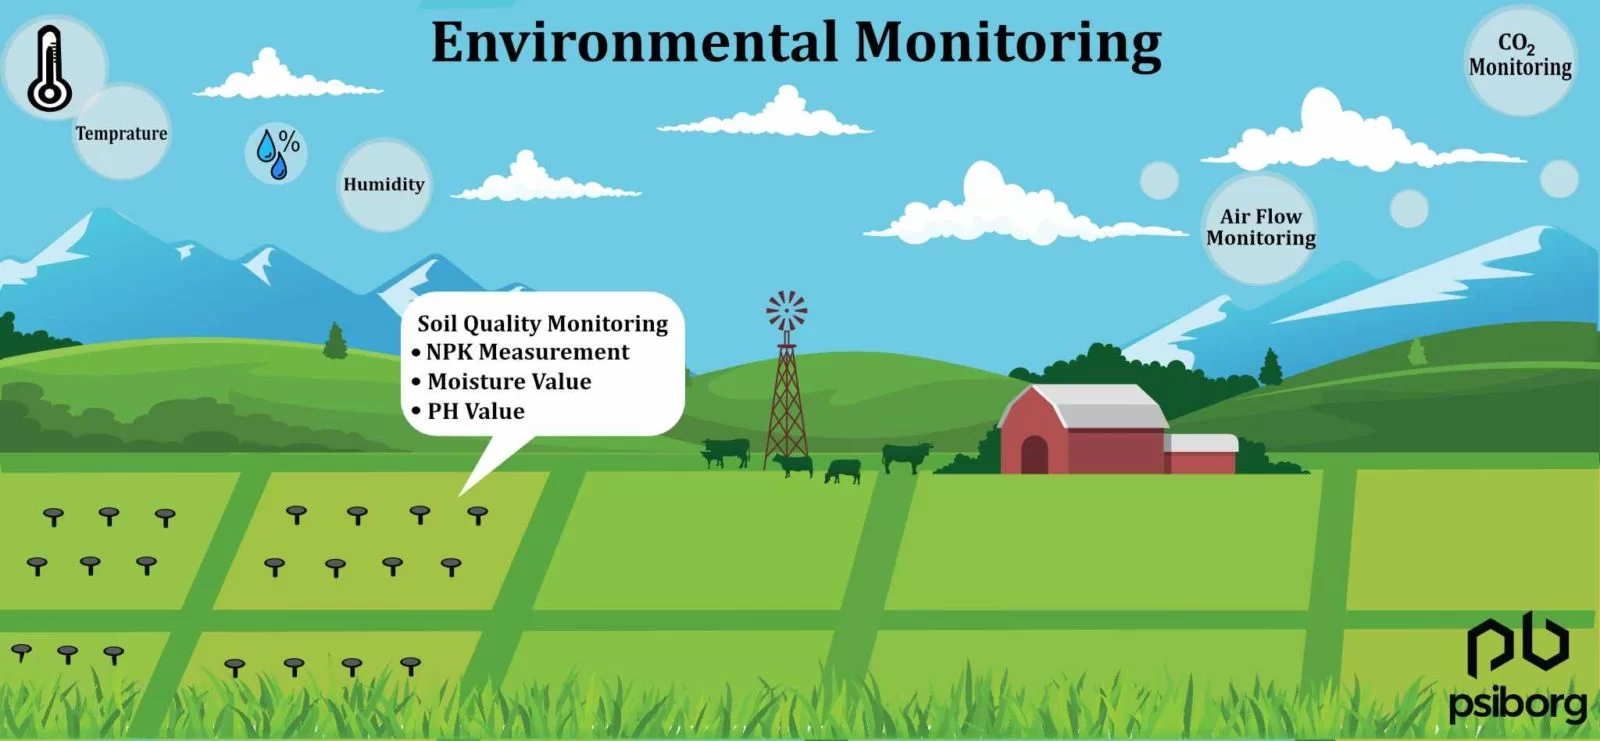 IoT based Environmental Monitoring